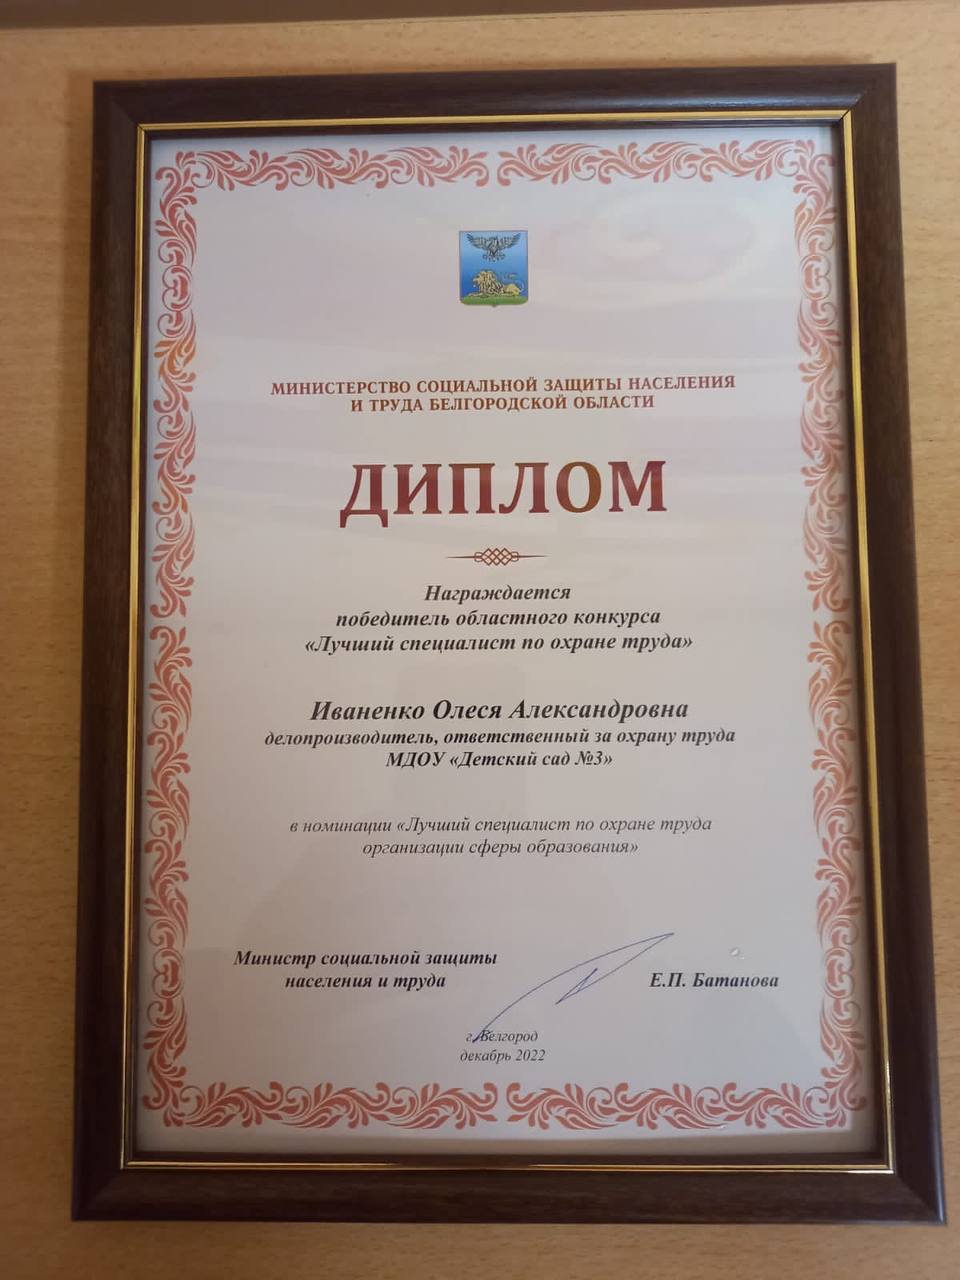 Ракитянка Олеся Иваненко стала одним из победителей областного конкурса «Лучший специалист по охране труда» - 2022